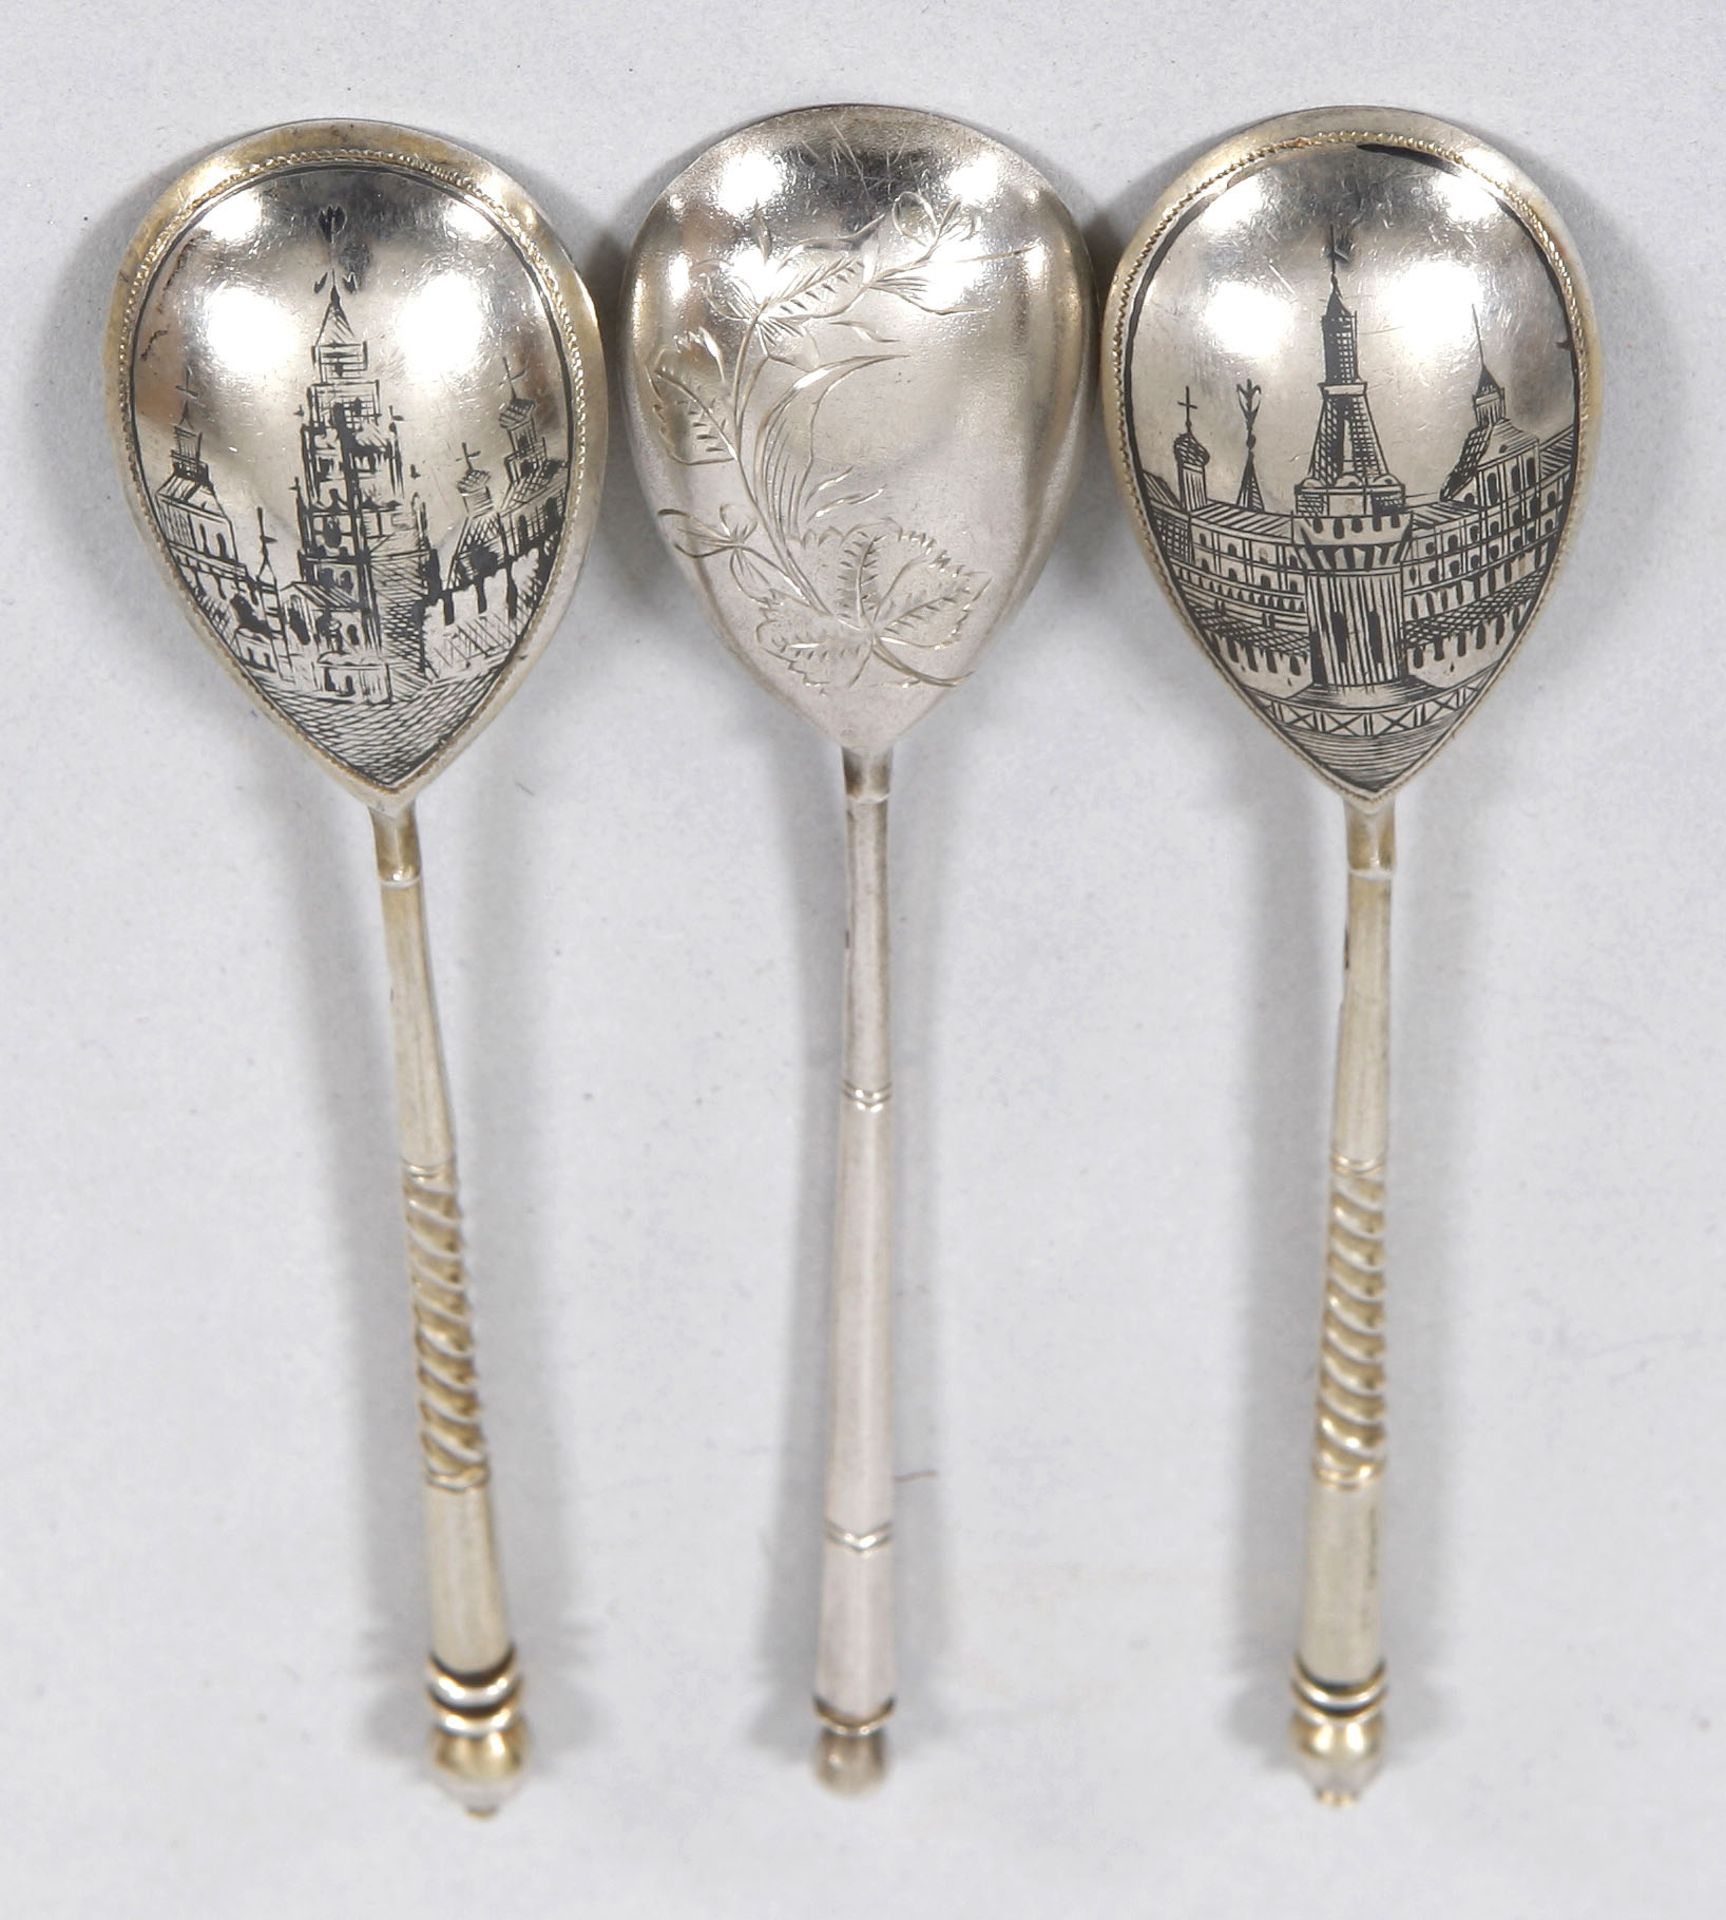 3 Teelöffel 84er Zolotniki Silber, Russland, um 1900 2x gedrehter Griff m. variier. - Bild 2 aus 2